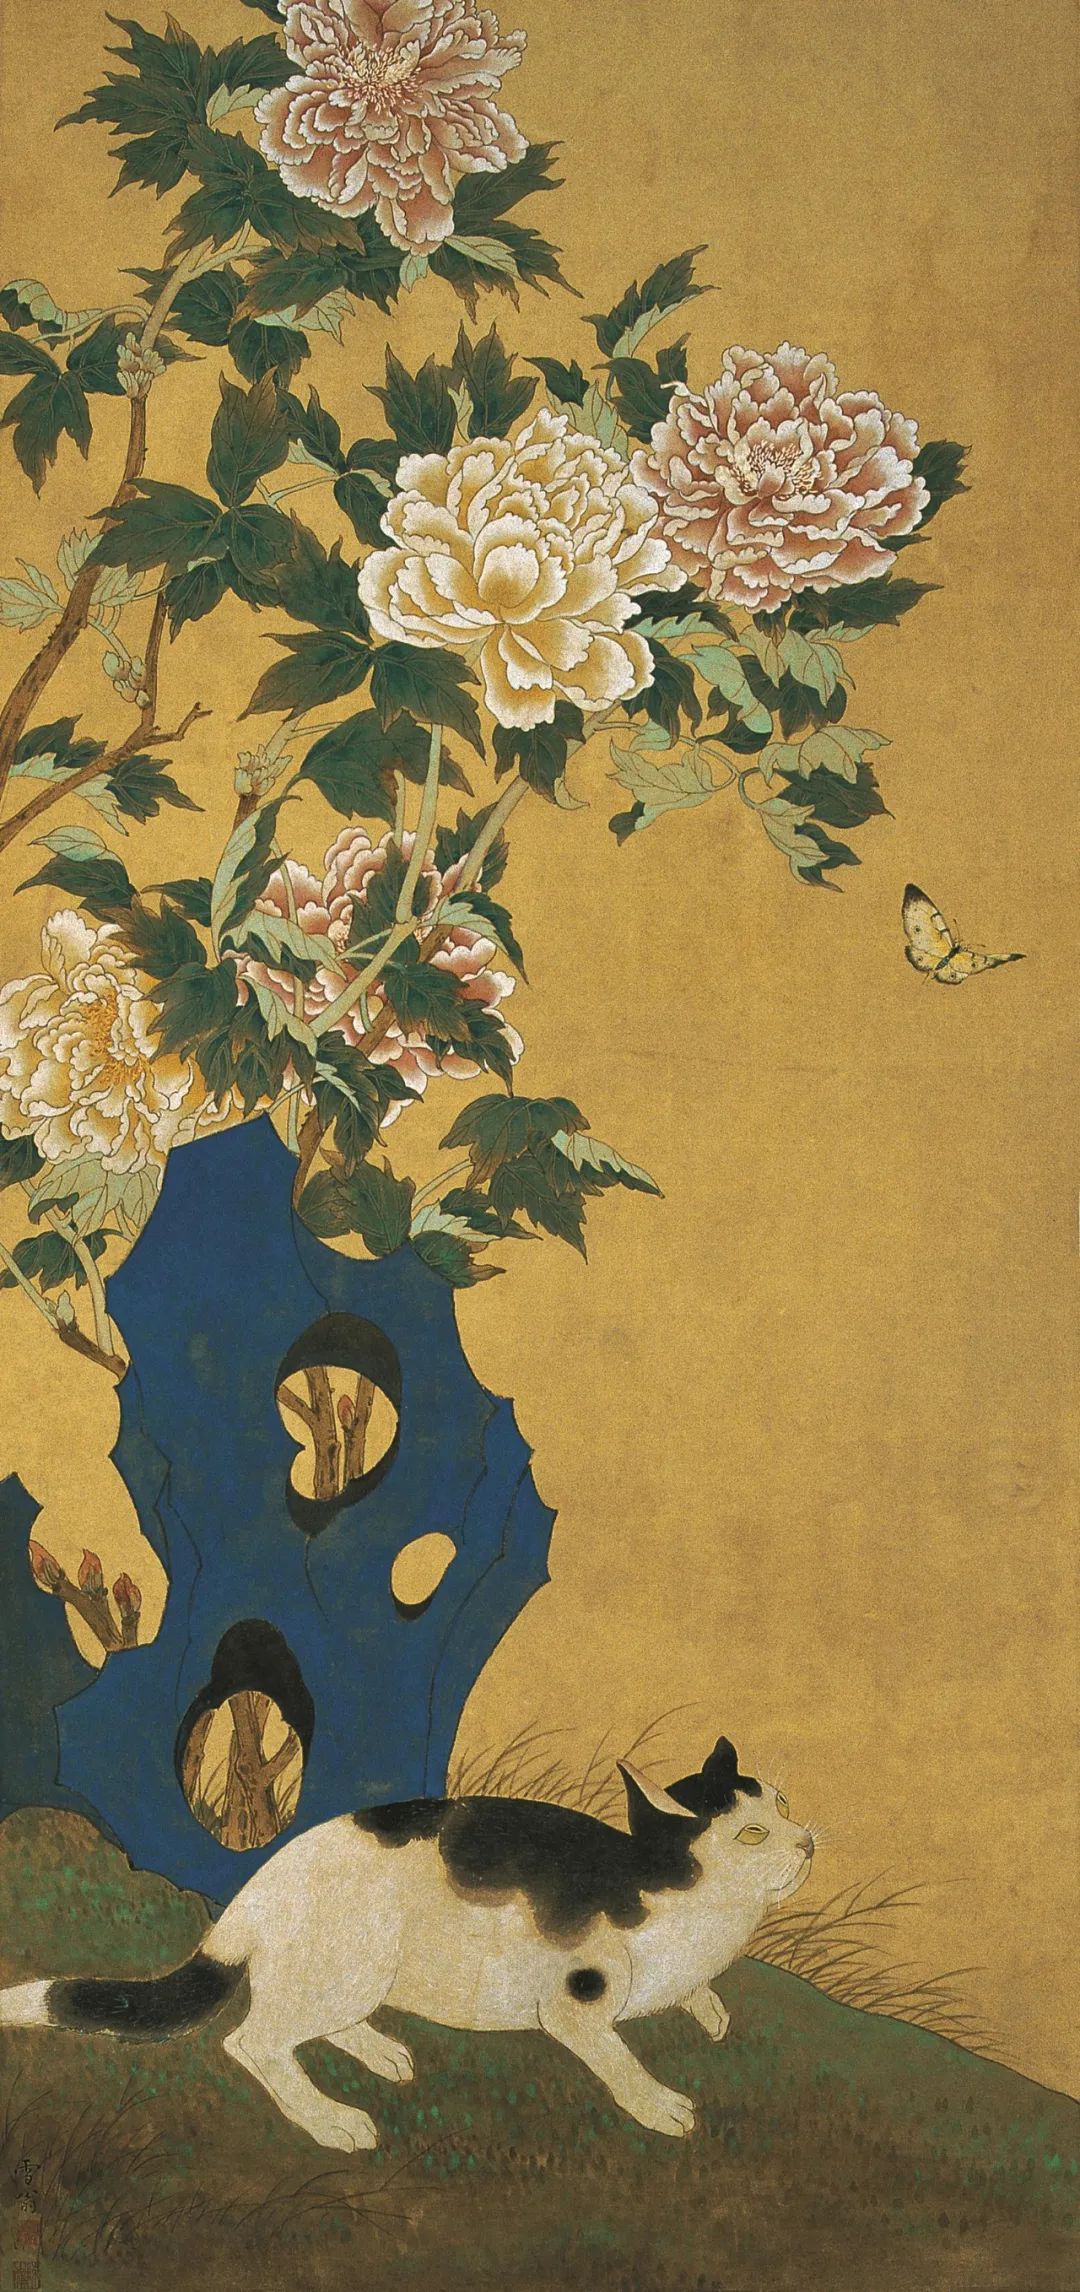 《文猫伺蝶》 陈之佛 中国画 112.8×52.3cm 1952年 南京博物院藏